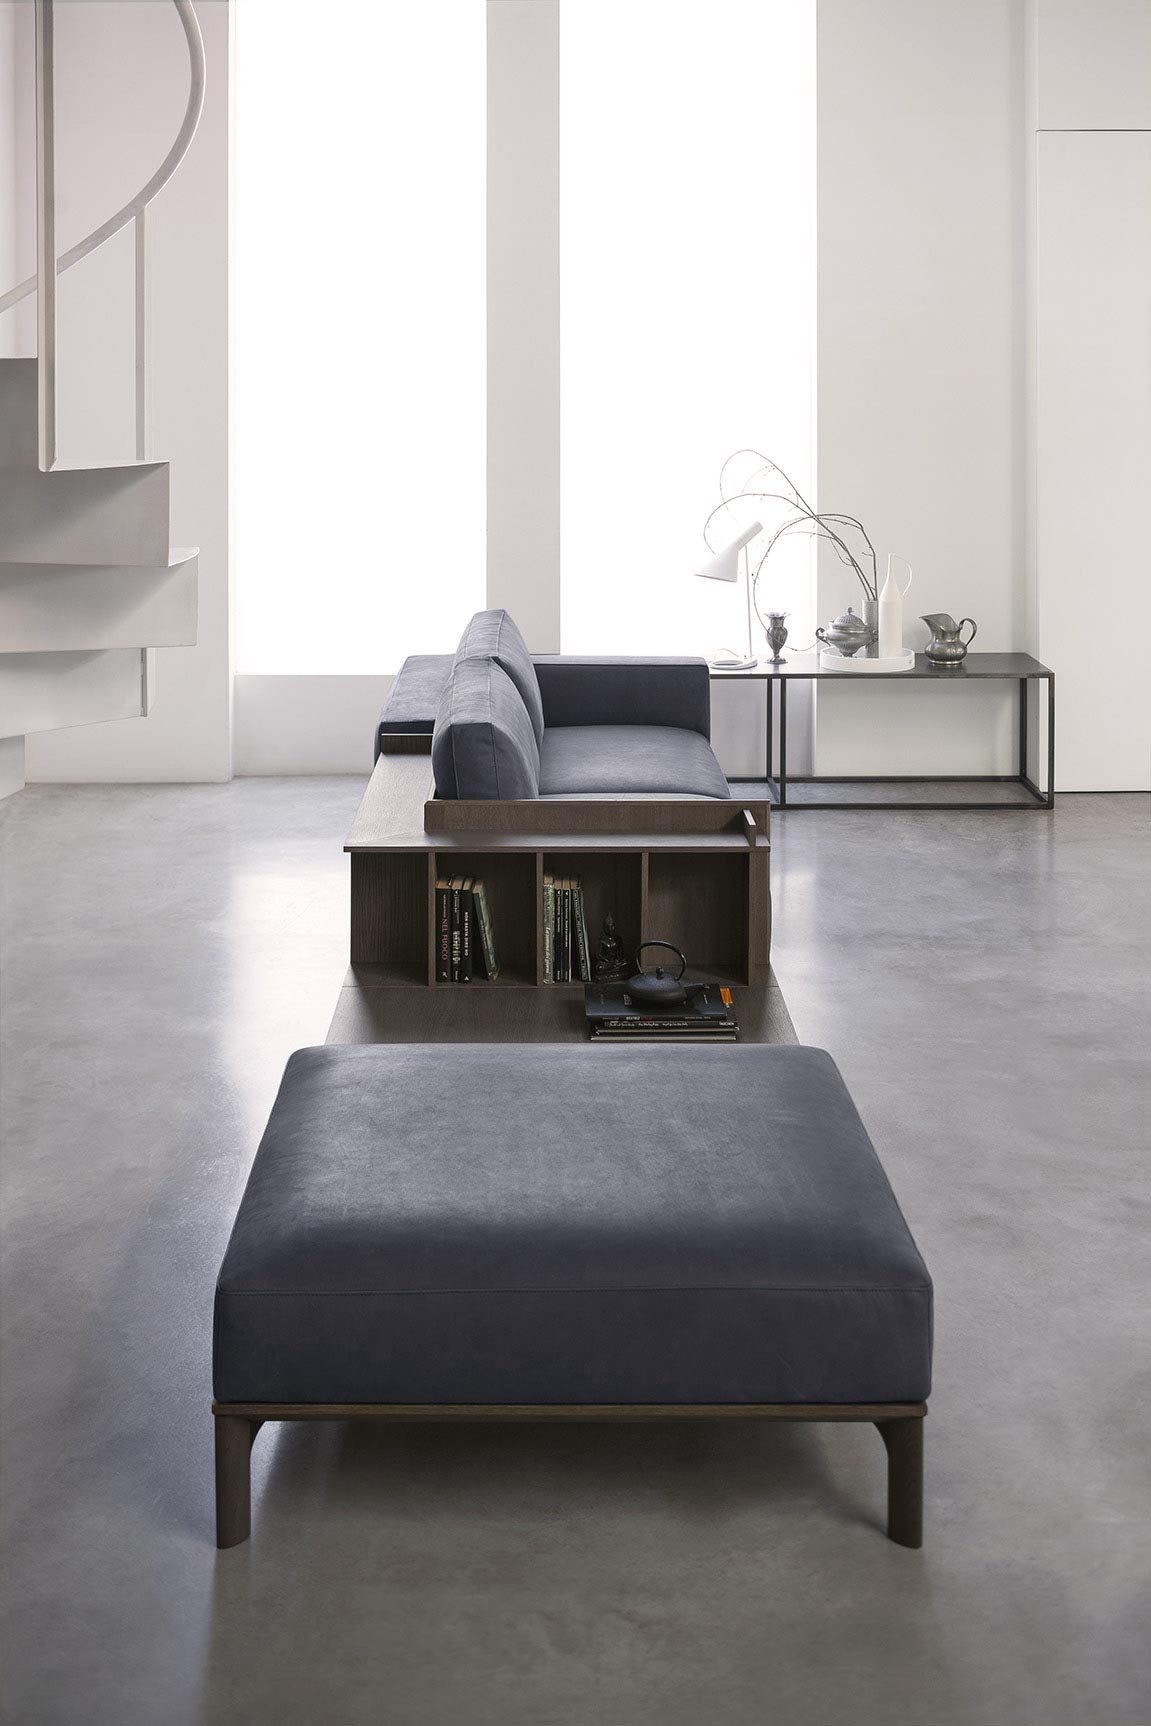 Plain interioris - leather sofa